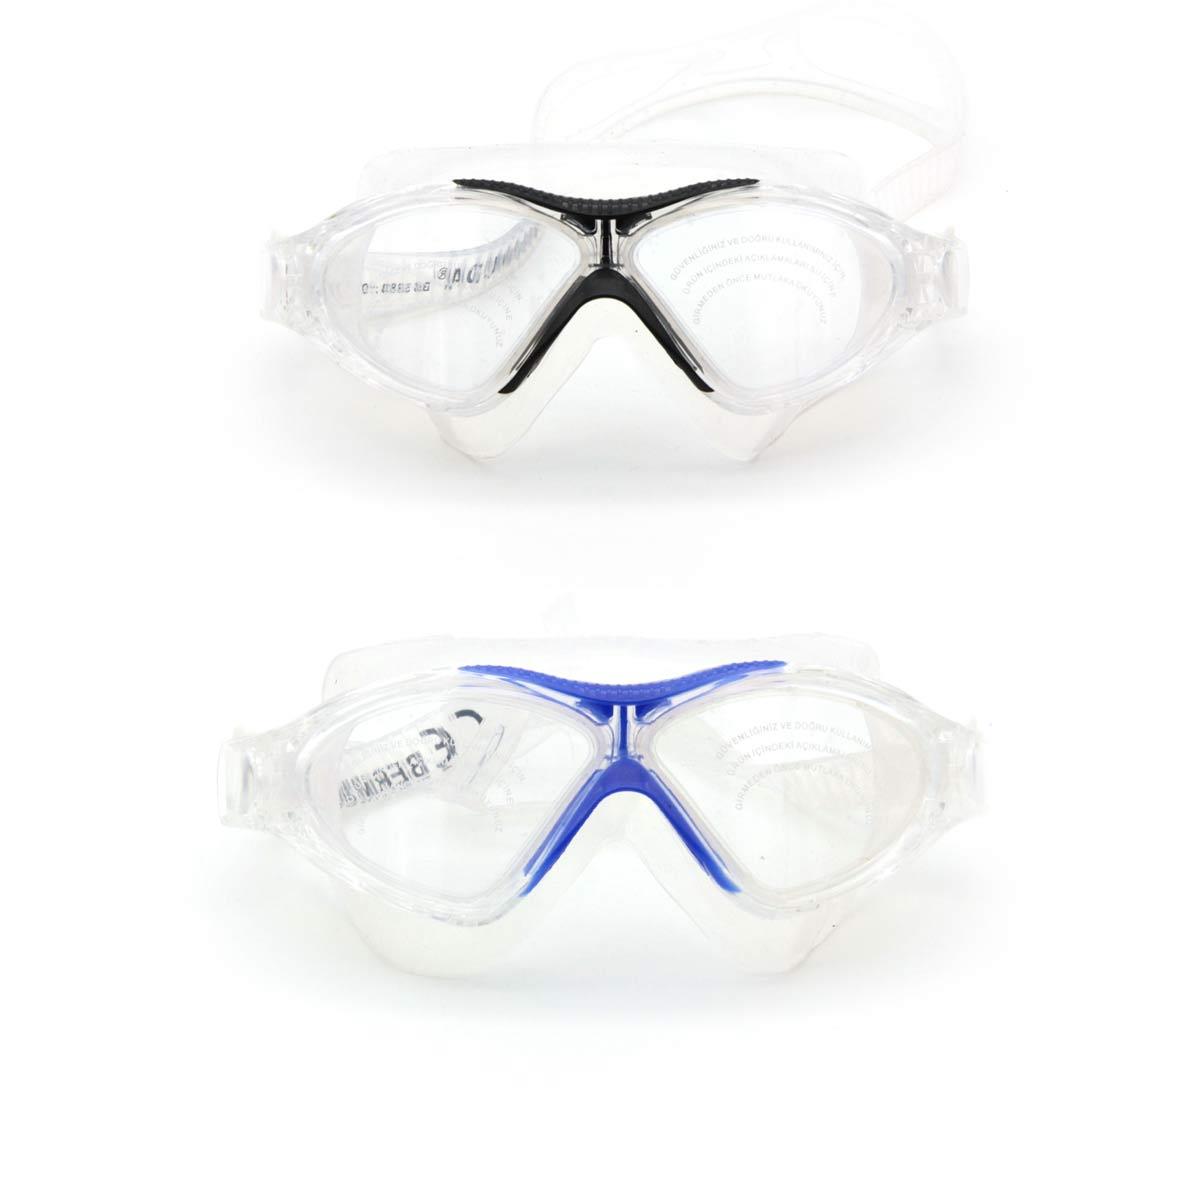 bermuda antifog sörf yüzücü gözlüğü